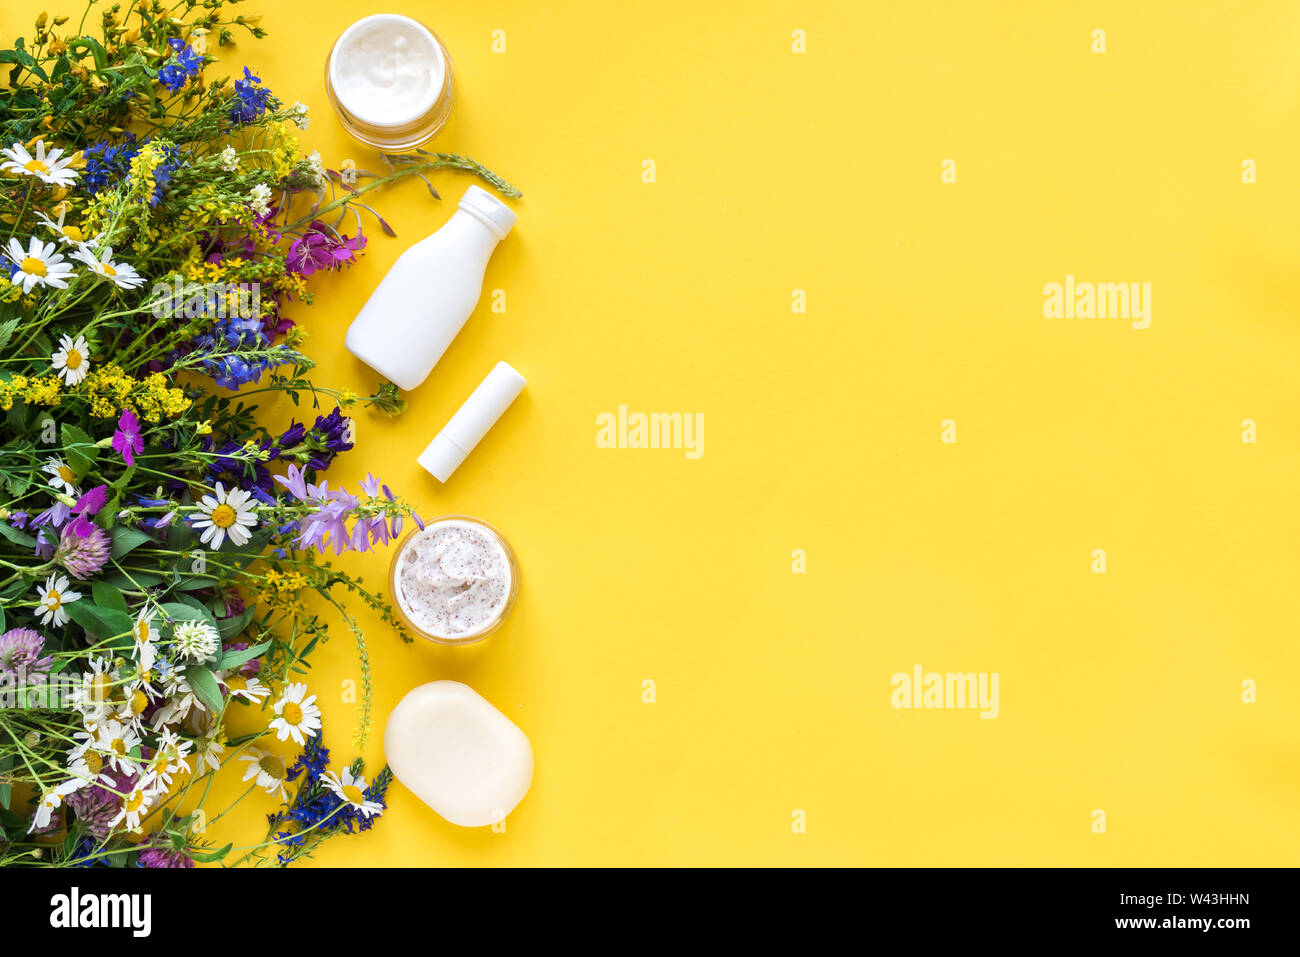 Natürliche Hautpflege. Kosmetik- und organischen Sommer Kräuter und Blüten auf gelbem Hintergrund, Ansicht von oben, kopieren. Umweltfreundliche und gesunde Lebensweise anhand von quantitativen Simulatio Stockfoto